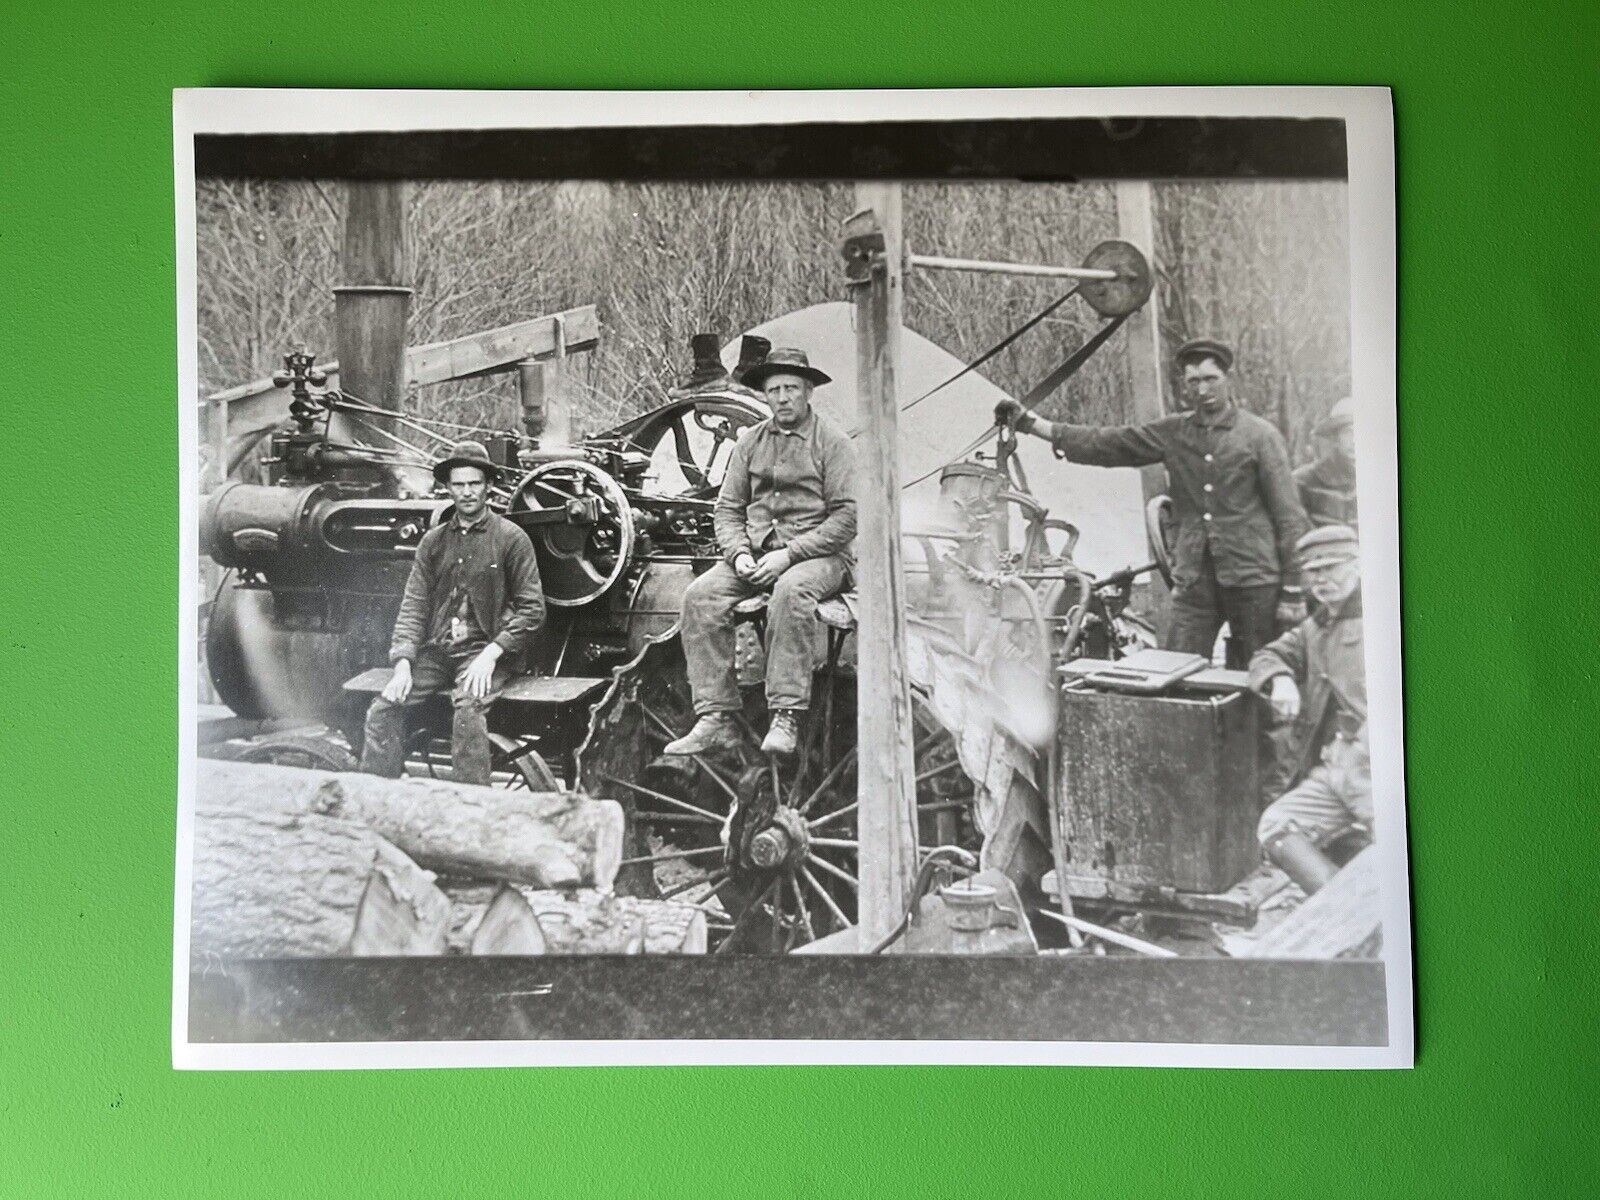 Vintage Steam Tractor - 16” X 20” Silver Gelatin Photograph